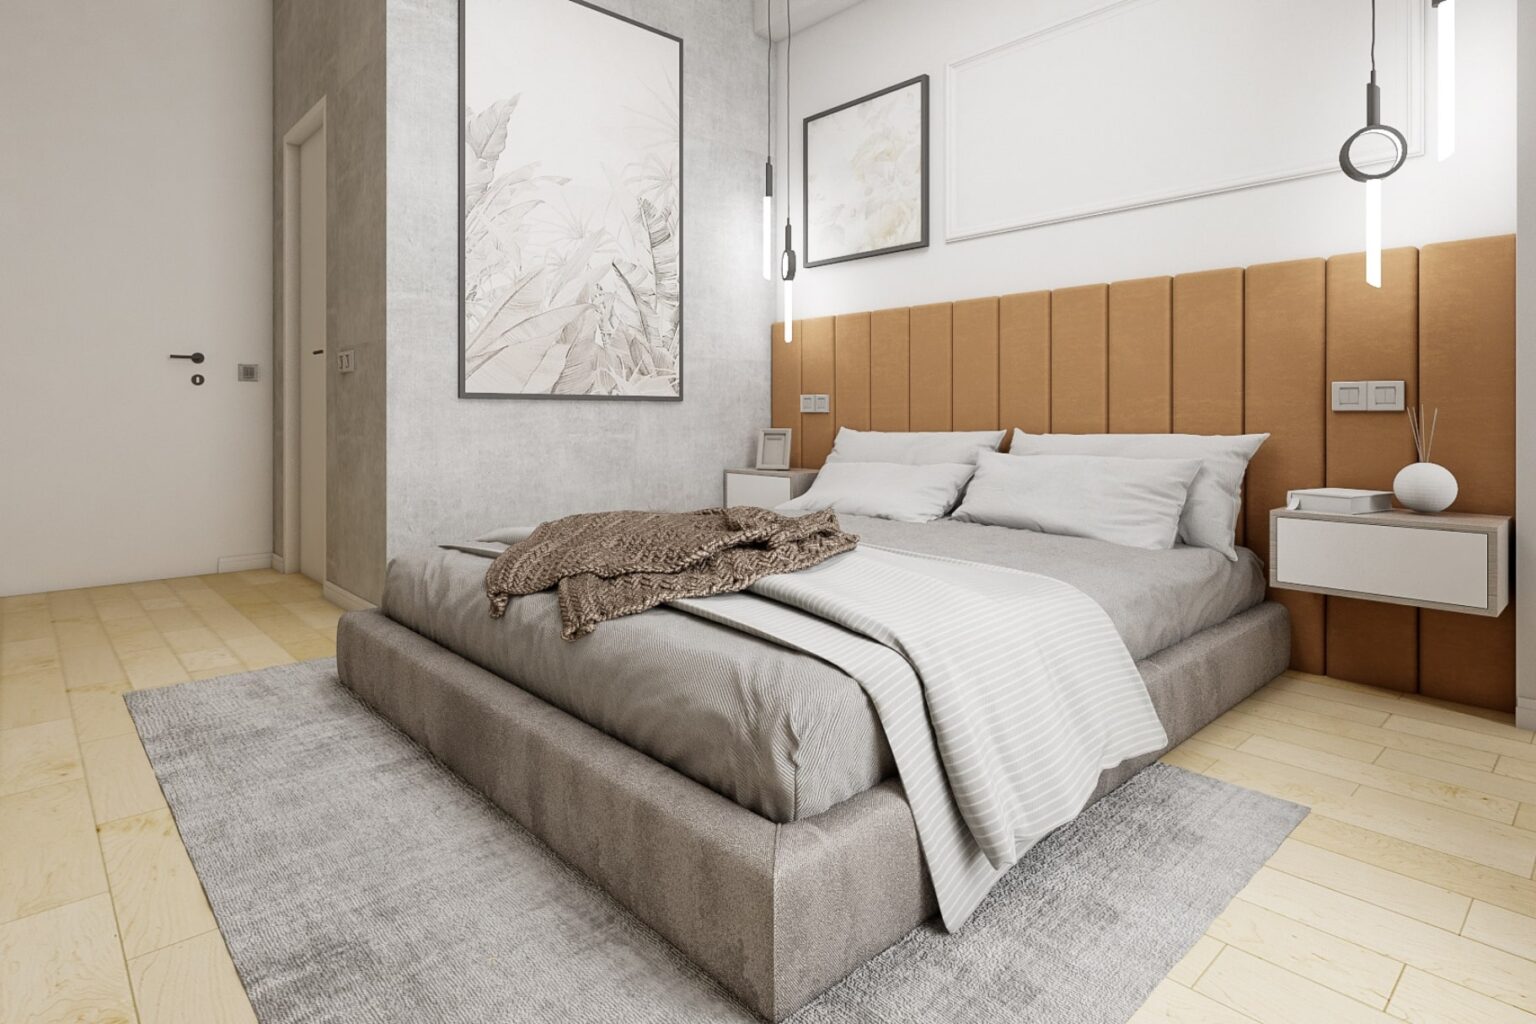 Amenajare dormitor pentru un proiect de design interior calitativ.